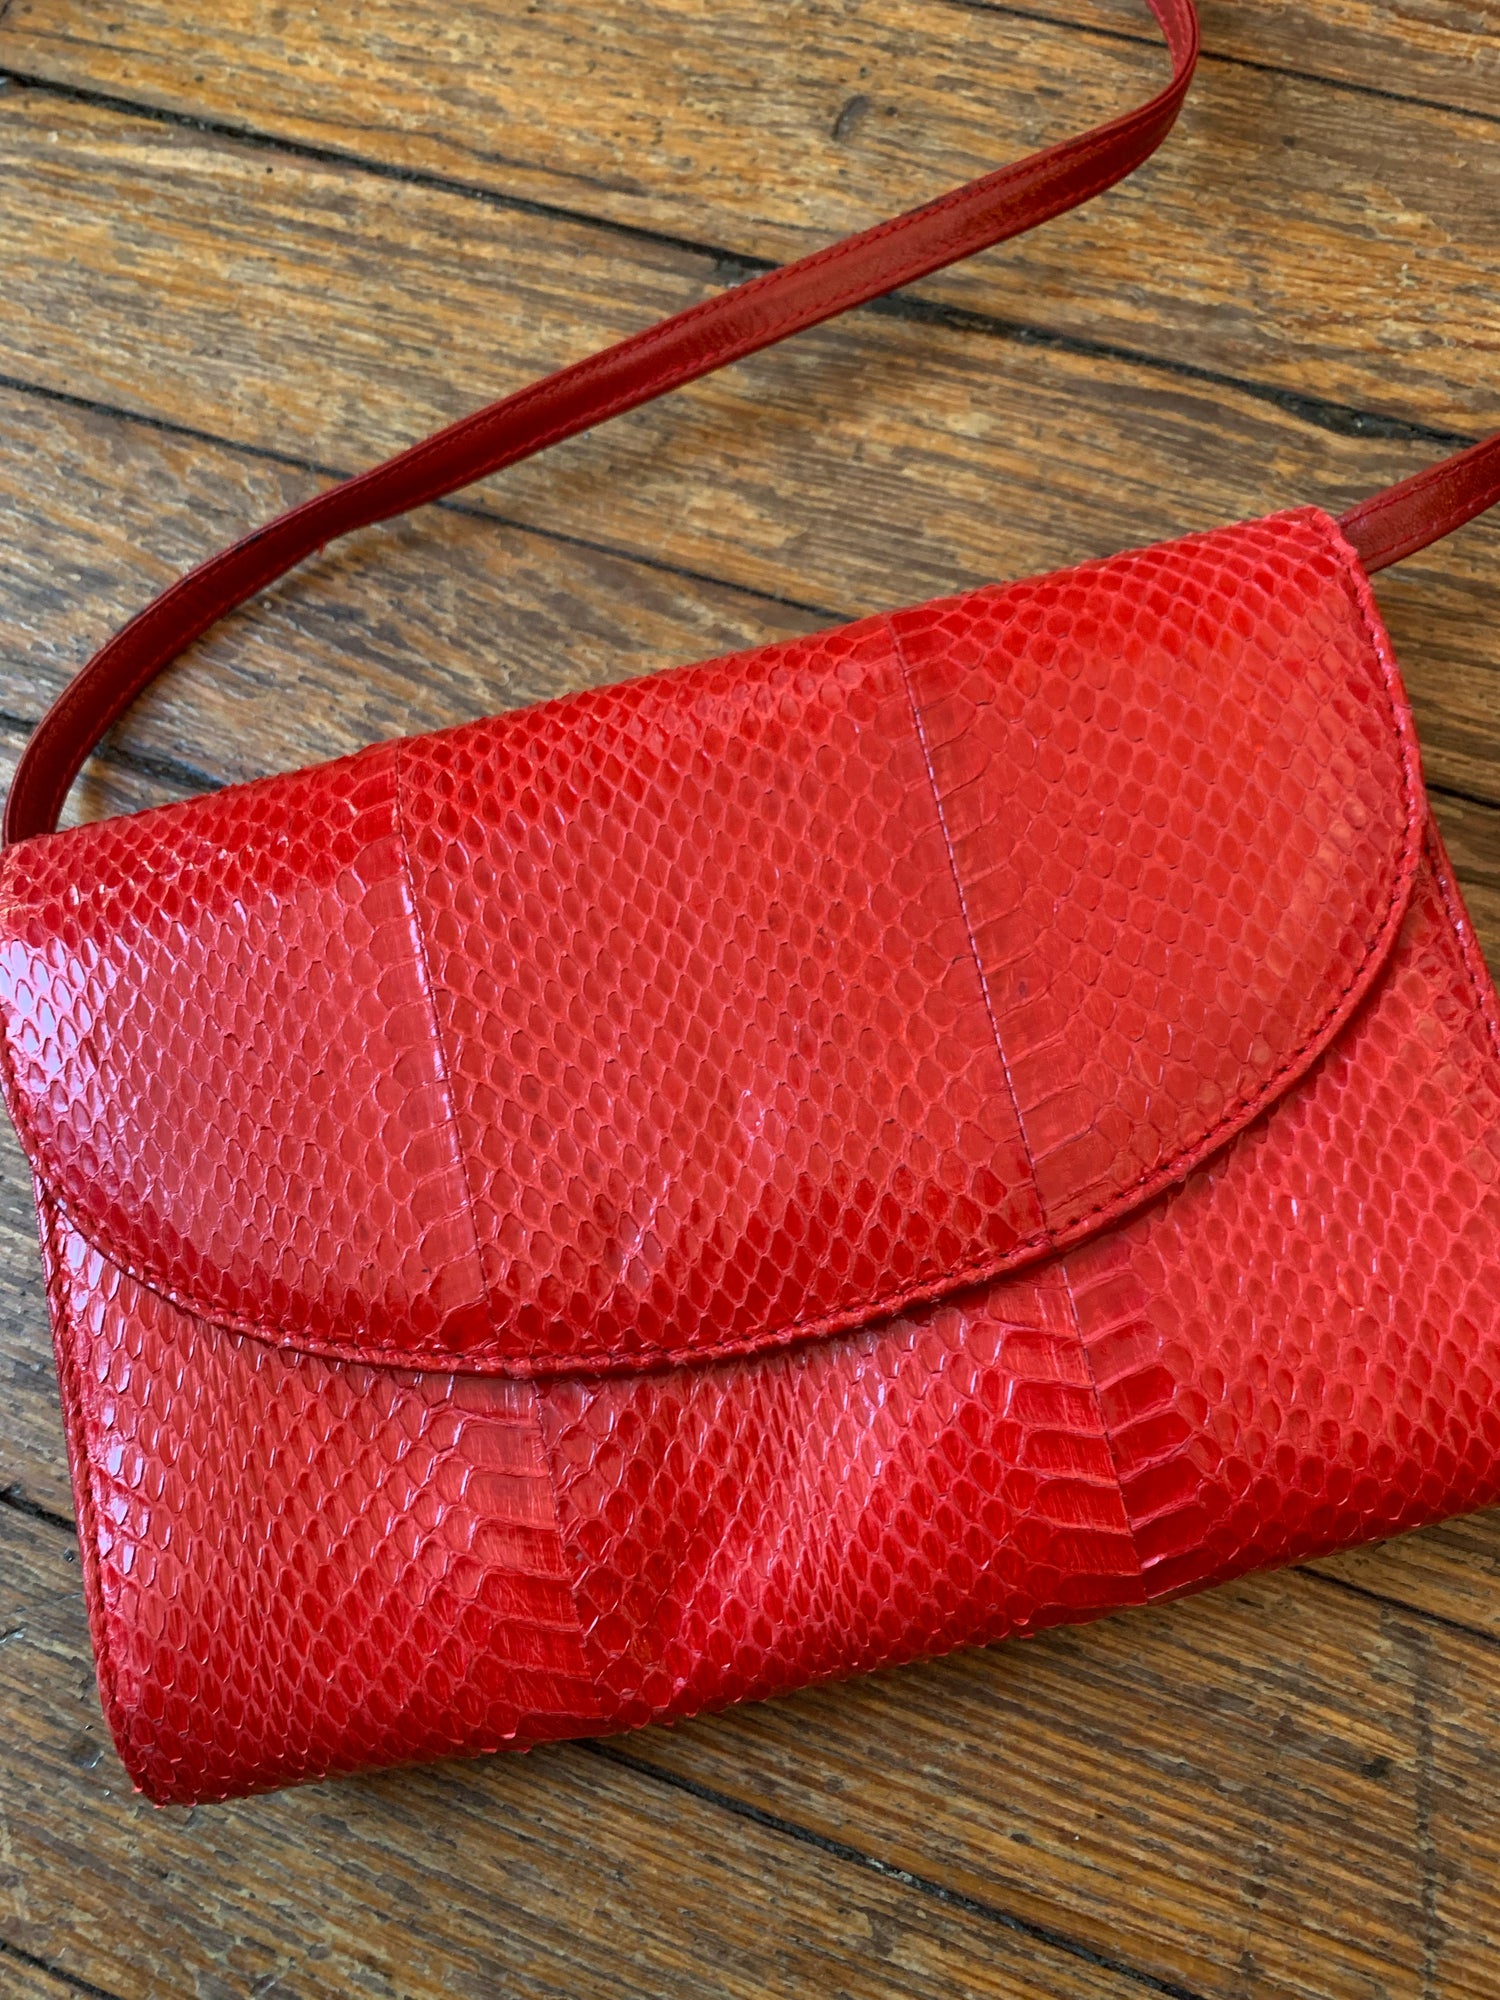 Giani Bernini, Bags, Giani Bernini Red Leather Crossbody Bag